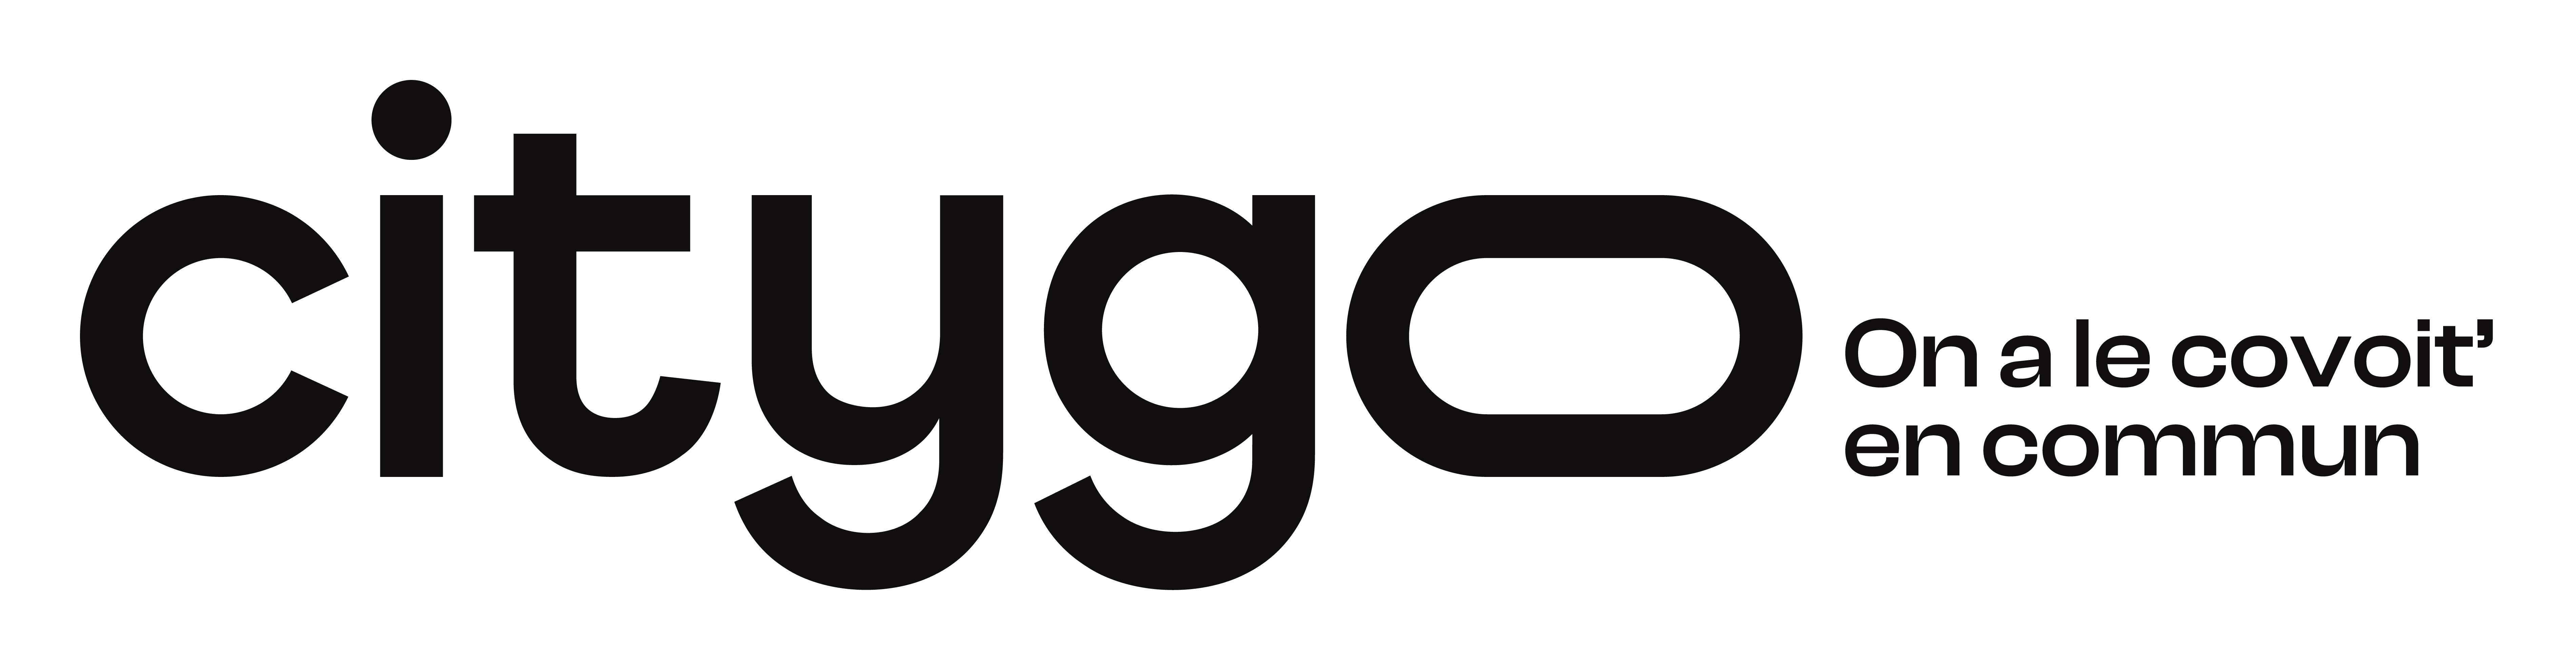 logo citygo - mobilité